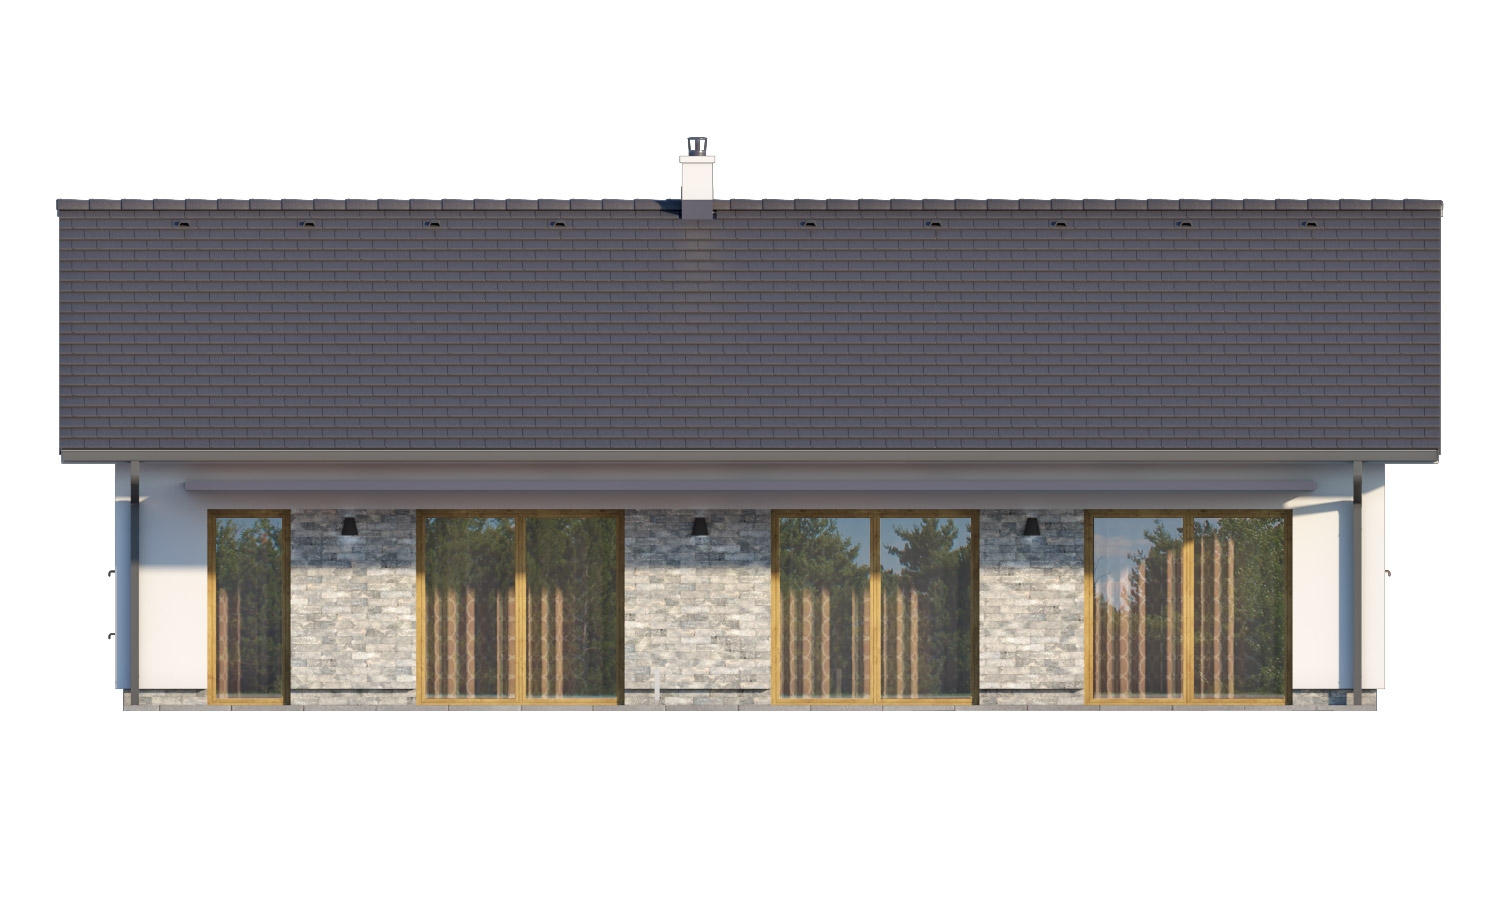 Pohľad 3. - Moderní bungalov s garáží ve tvaru U, sedlovou střechou a s pokoji orientovanými do zahrady.